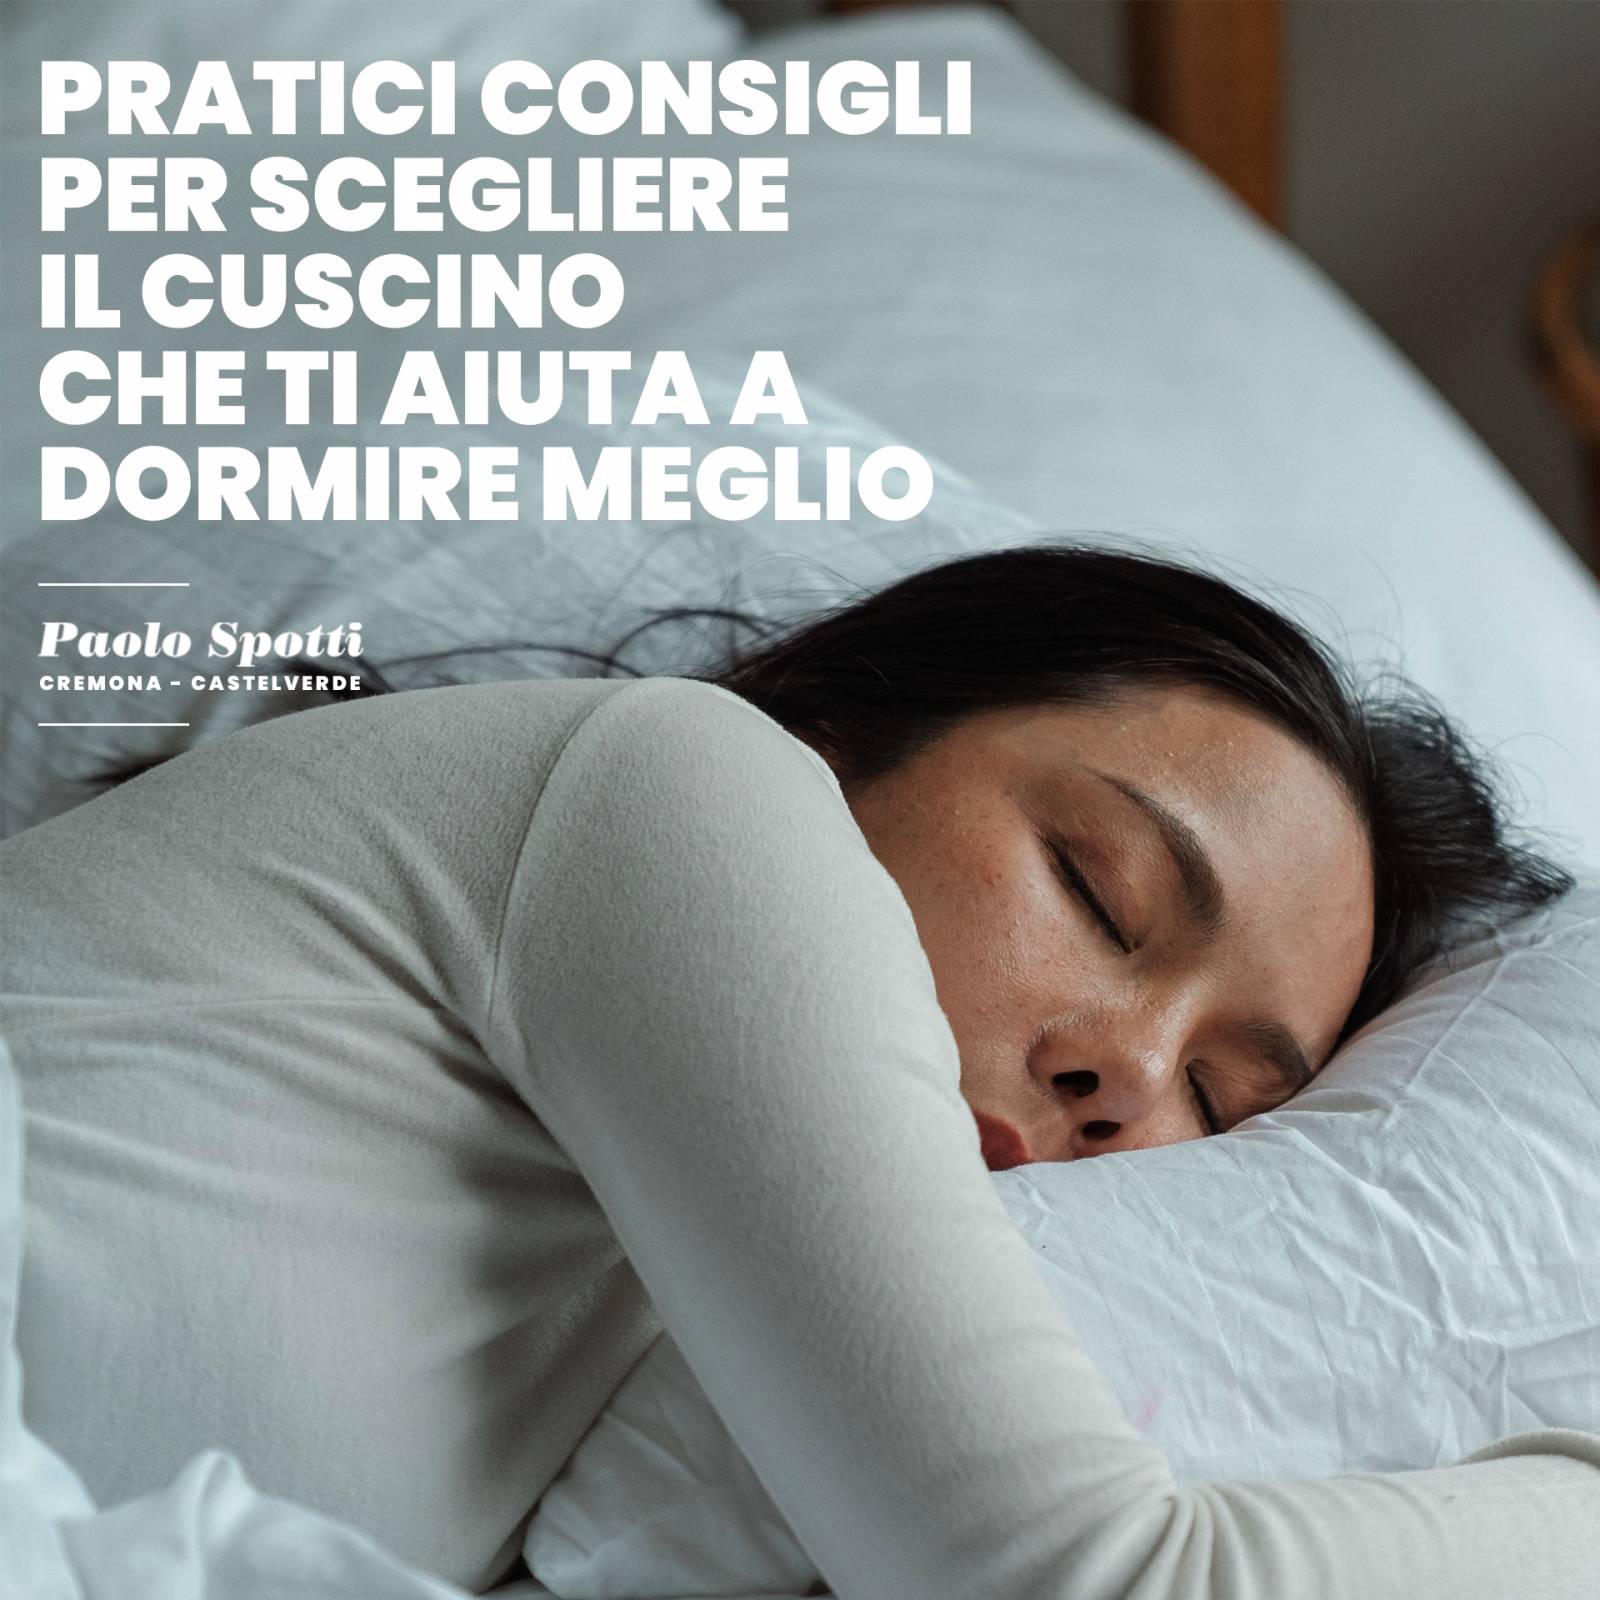 Come pulire il cuscino in memory foam - Paolo Spotti - Cremona